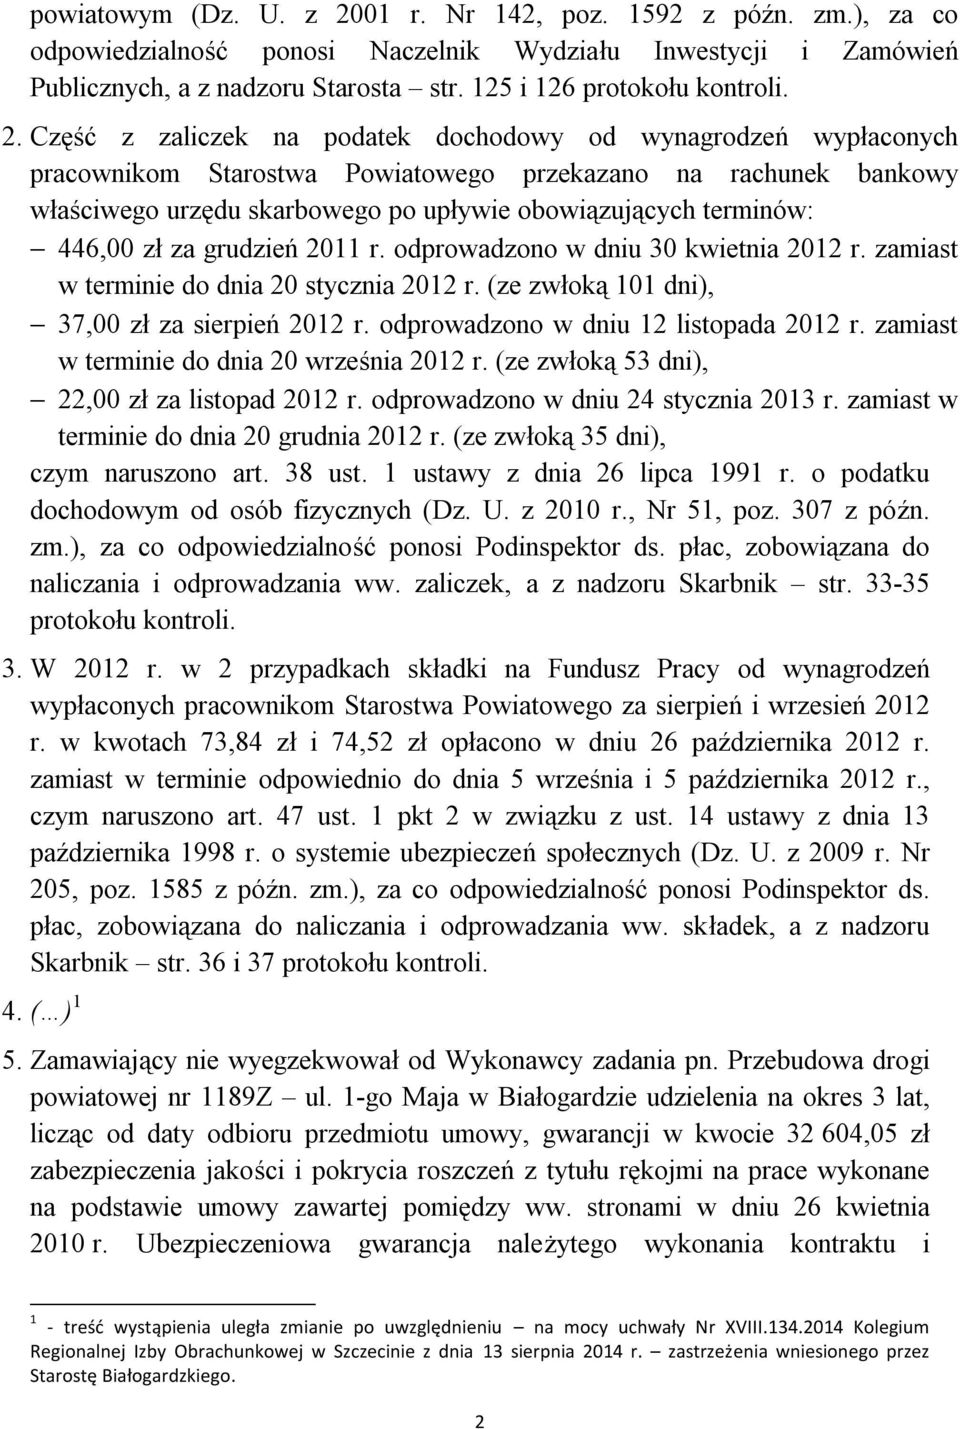 446,00 zł za grudzień 2011 r. odprowadzono w dniu 30 kwietnia 2012 r. zamiast w terminie do dnia 20 stycznia 2012 r. (ze zwłoką 101 dni), 37,00 zł za sierpień 2012 r.